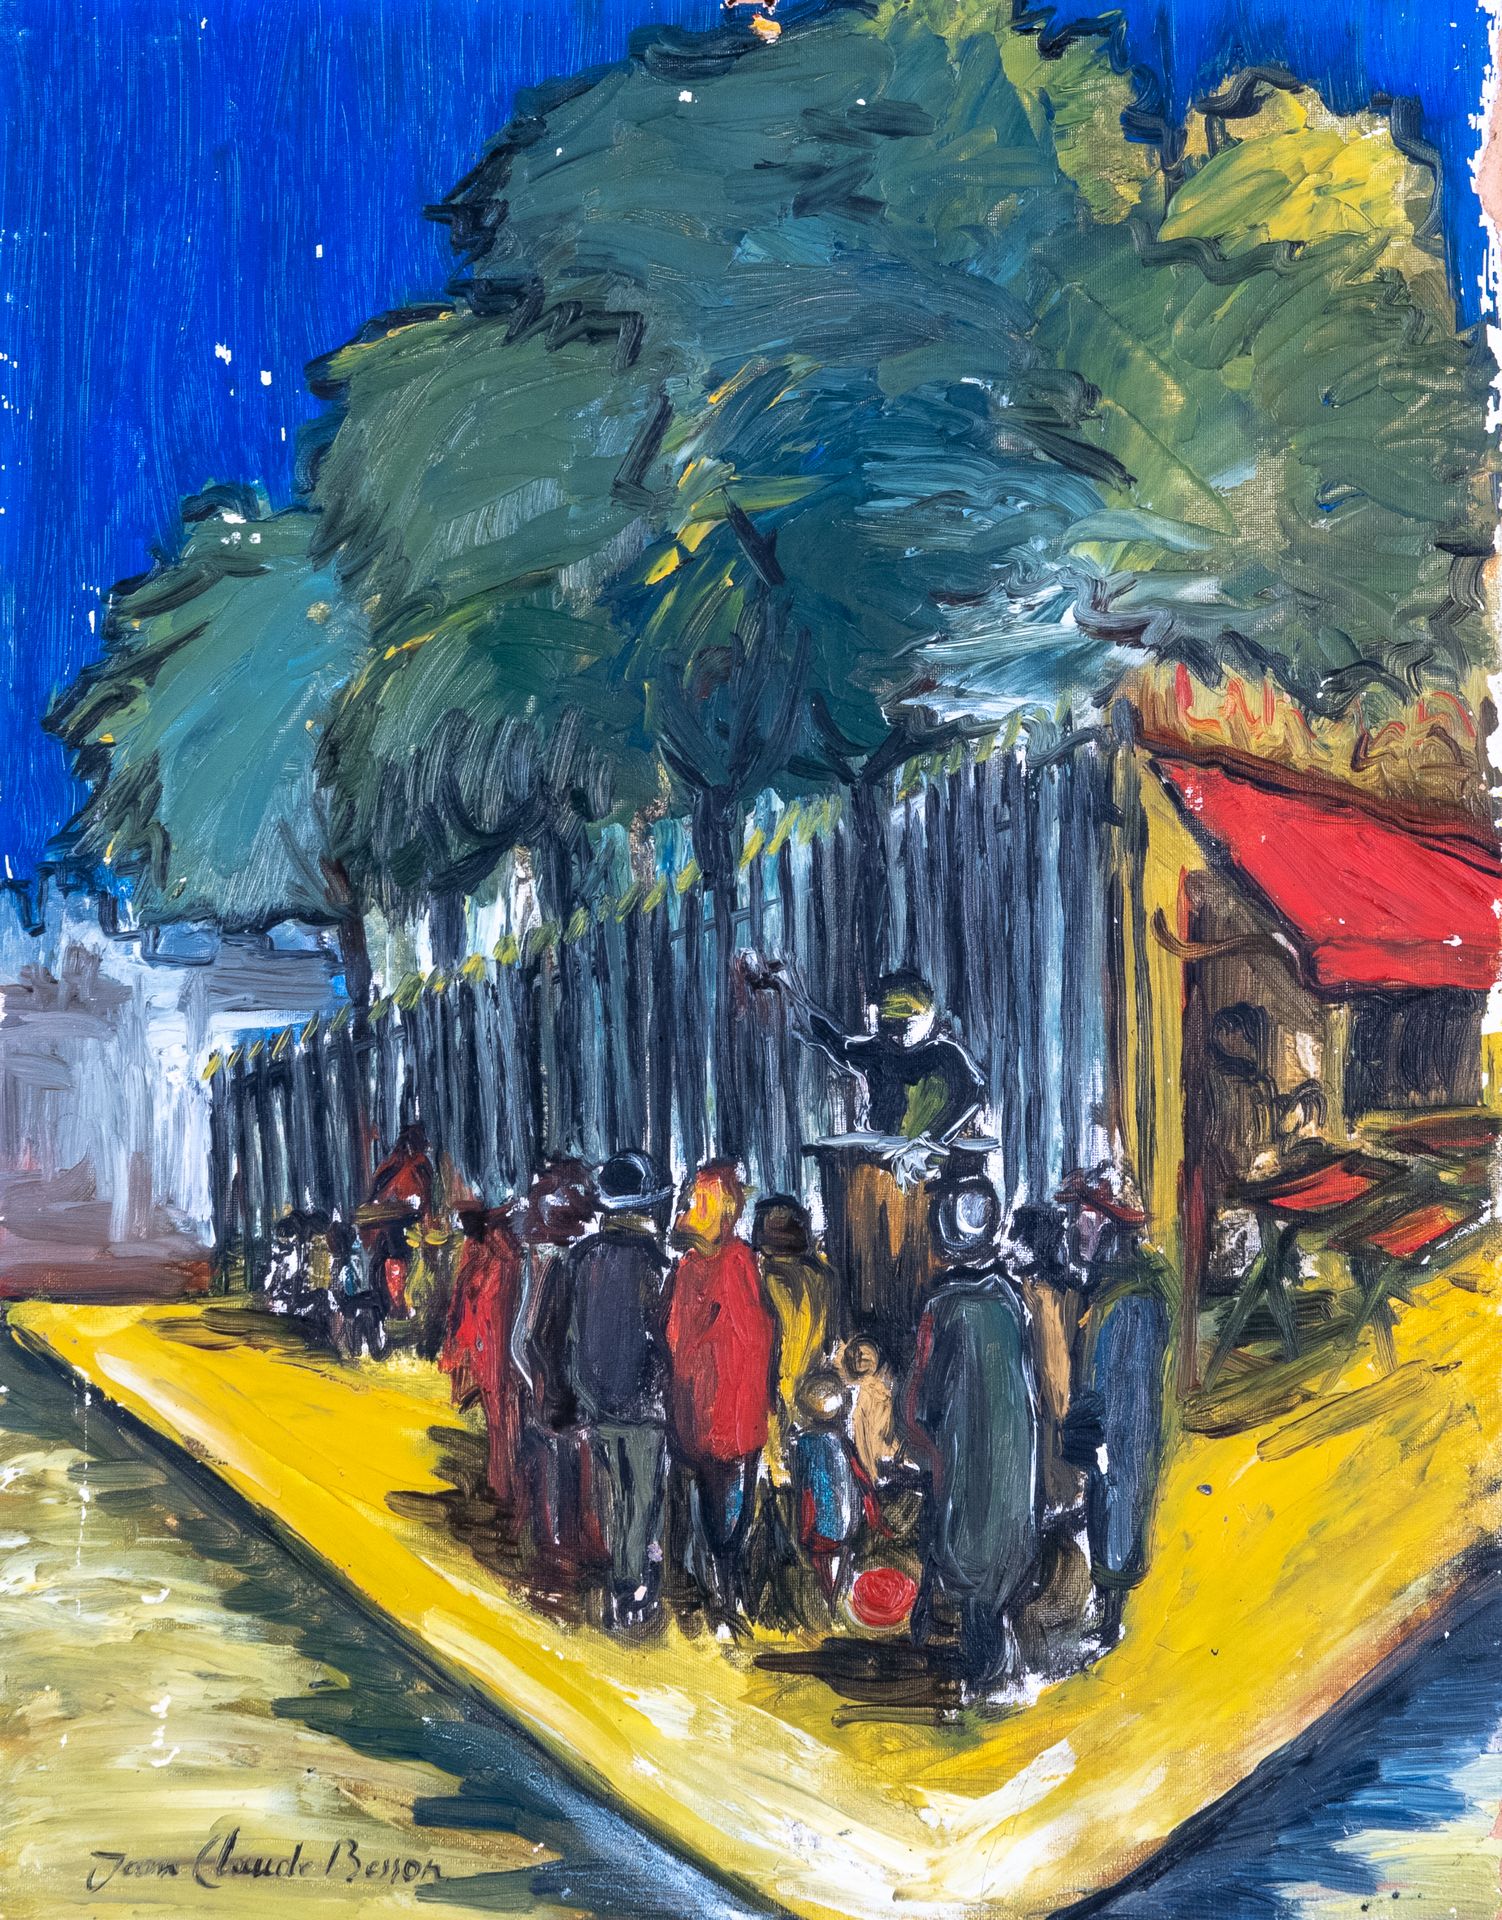 Null 让-克劳德-贝松-吉拉尔 (1938-2021)

拍卖会

布面油画，左下角有签名

(小事故和缺乏材料)

35 x 27 cm